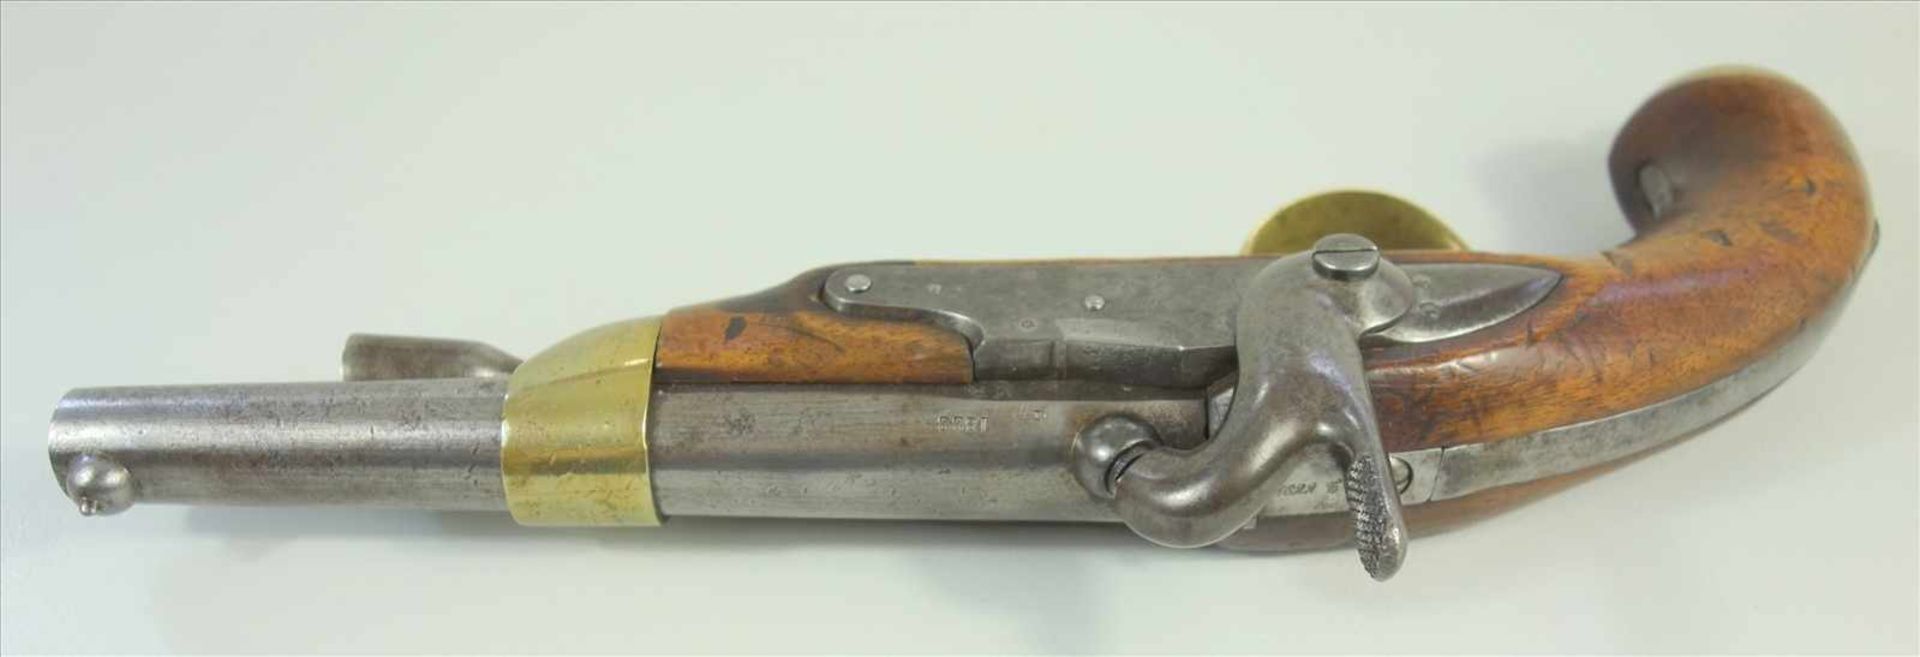 Perkussionspistole, Frankreich, Mod.1822t Bis, Kal.17.6mm, Lauflänge 190mm, gesamt 30 m, Lauf, - Bild 2 aus 5